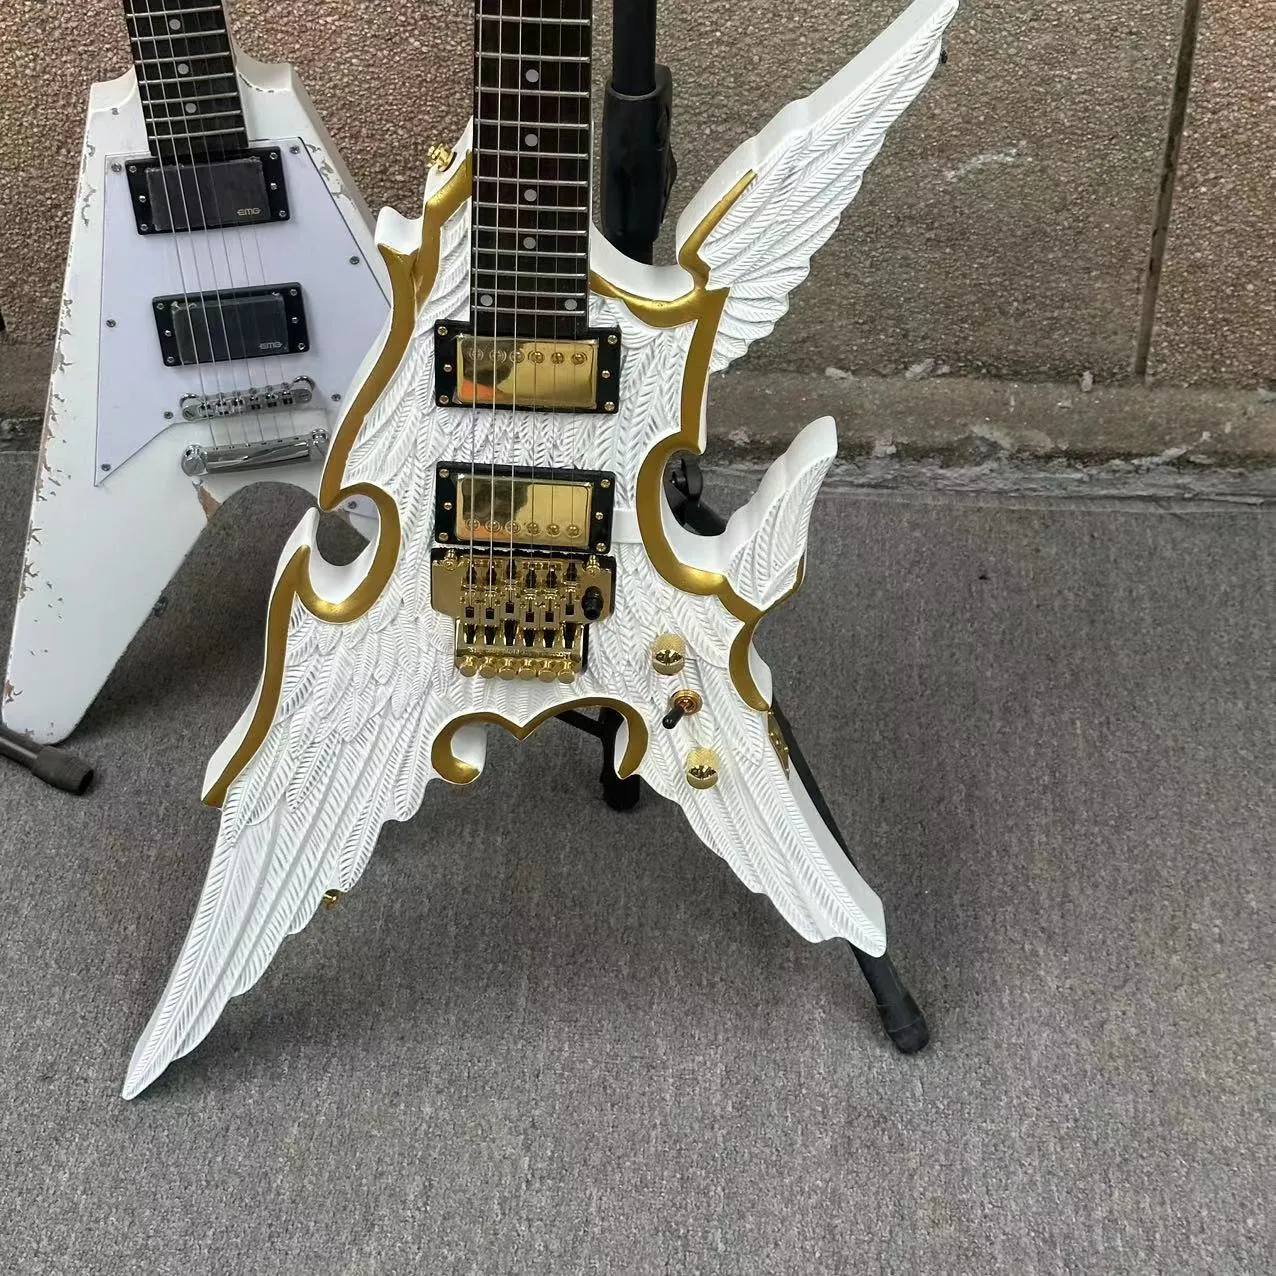 Oyulmuş melek kanatları 6 telli bölünmüş elektro gitar beyaz gövdesi altın jantlı